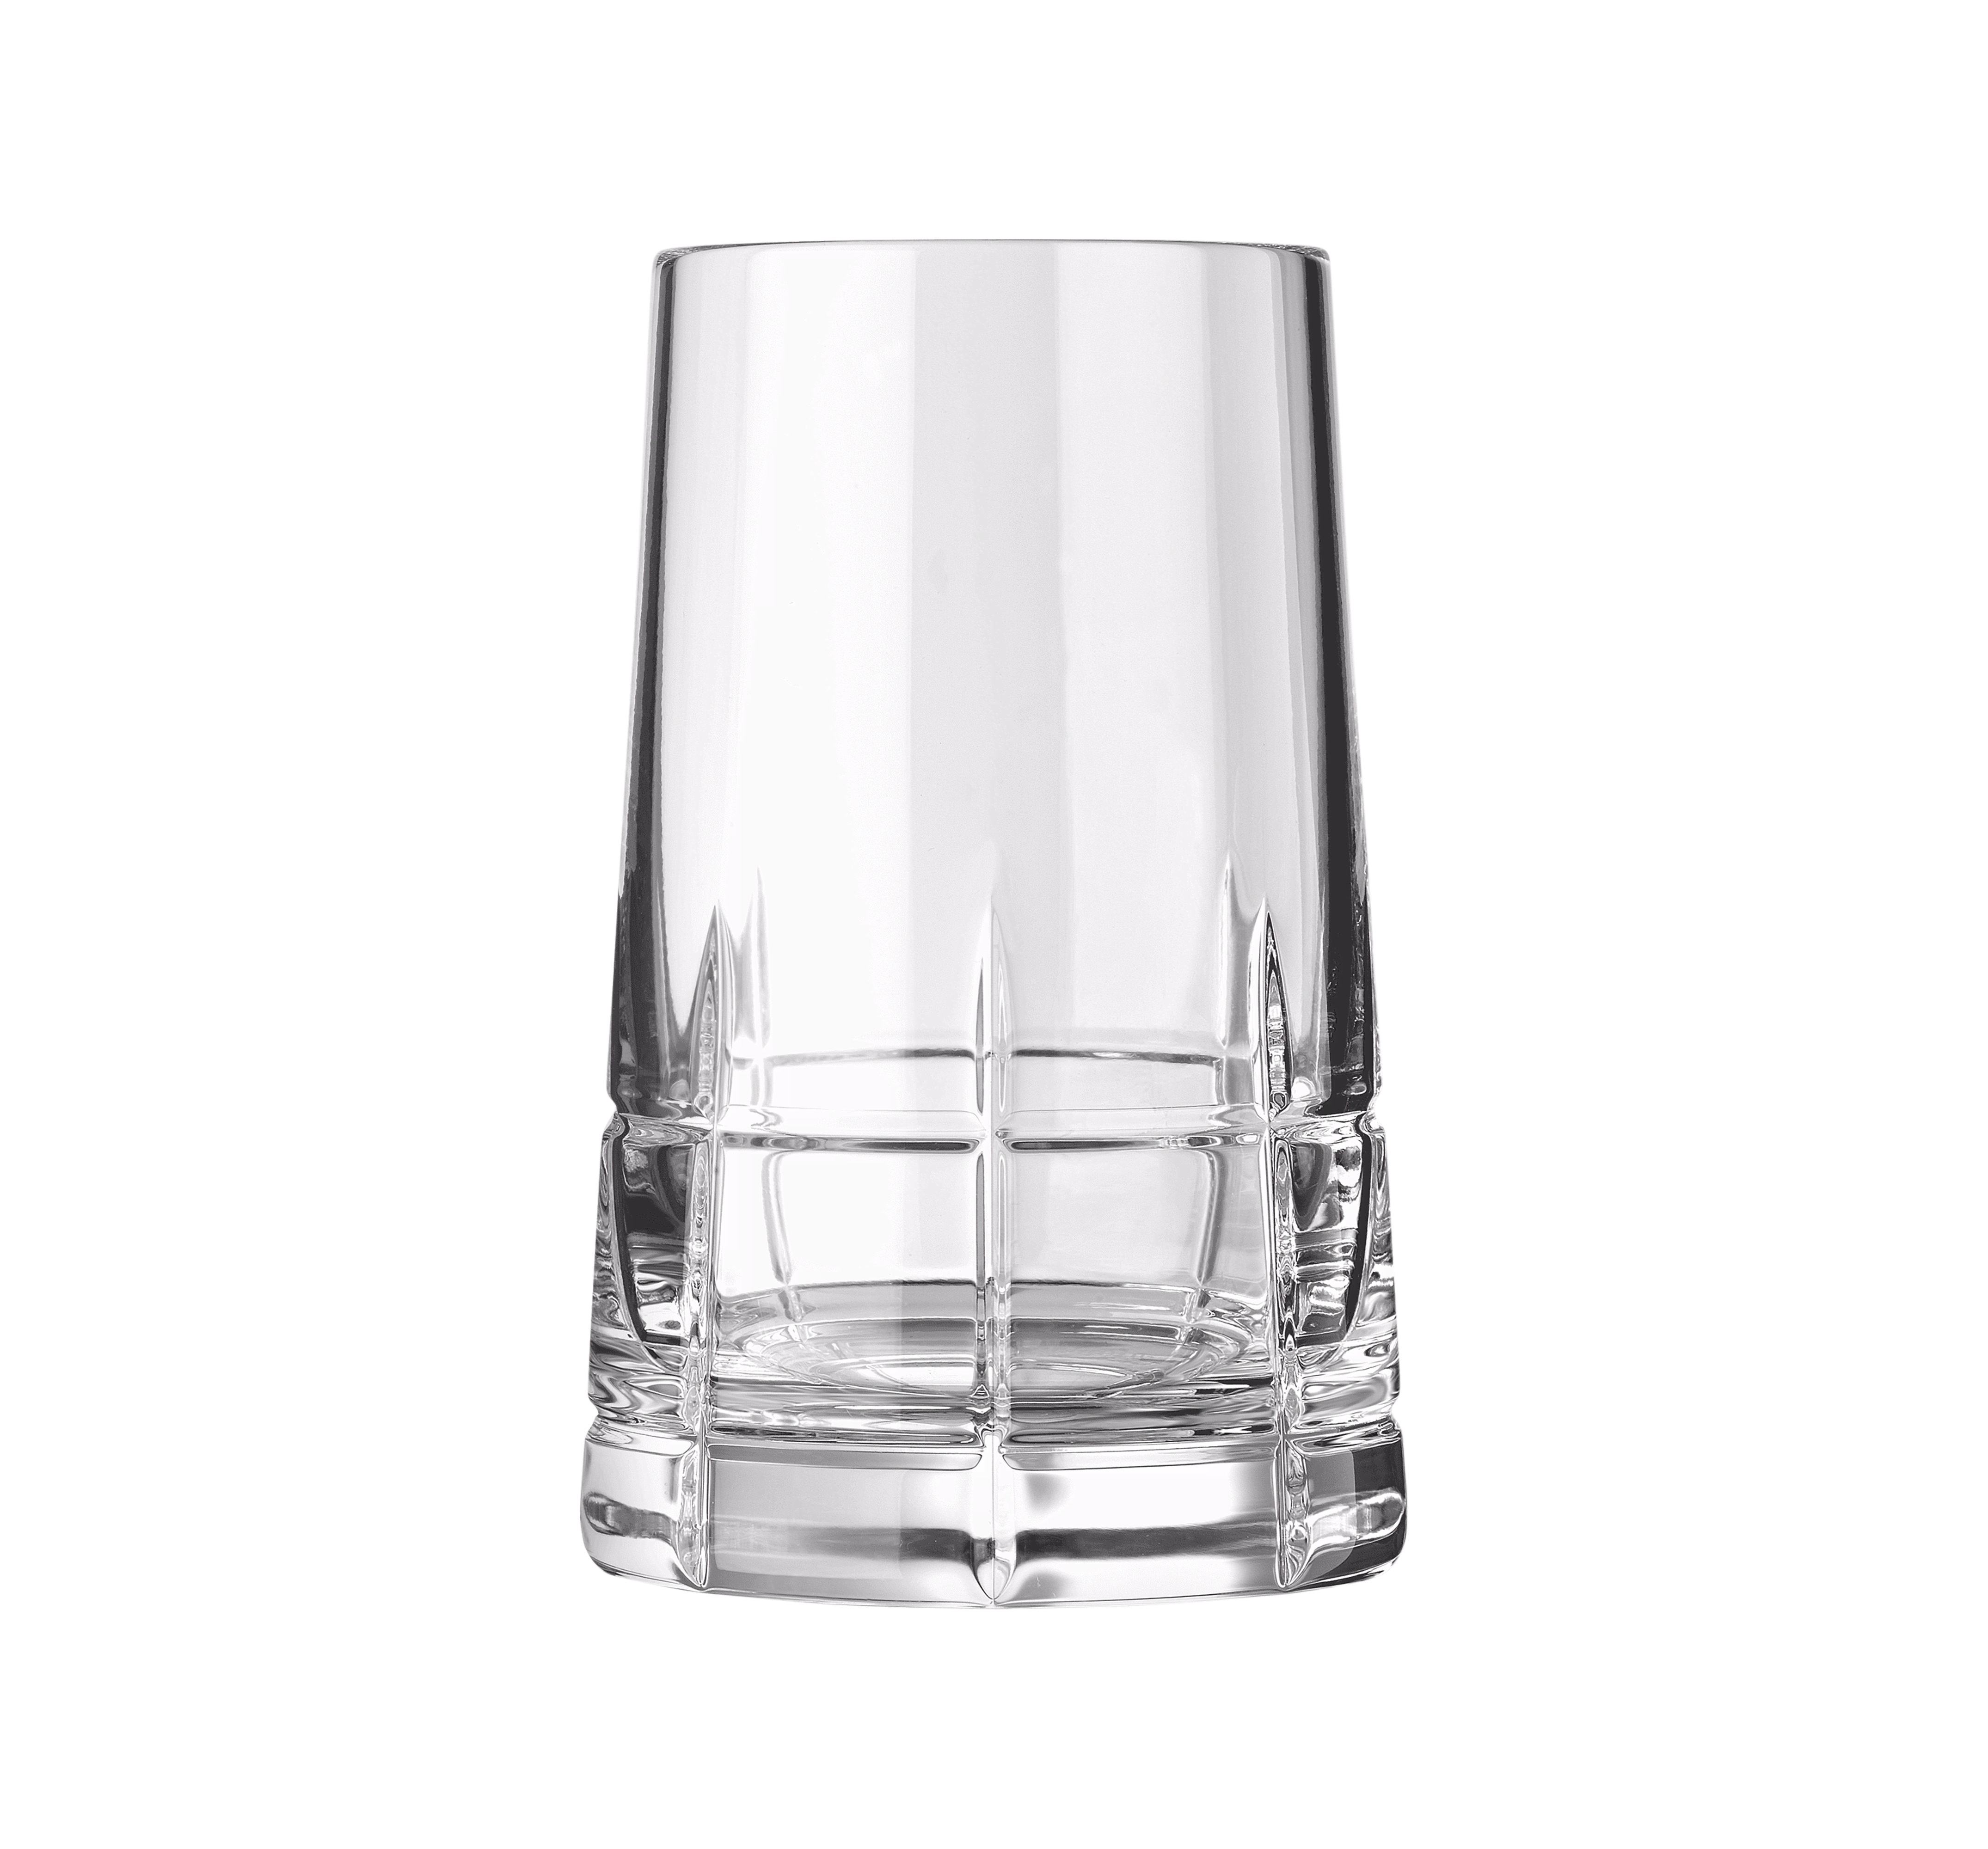 Crystal vodka glasses 60 ml transparent, set of 6 | ArtStore24